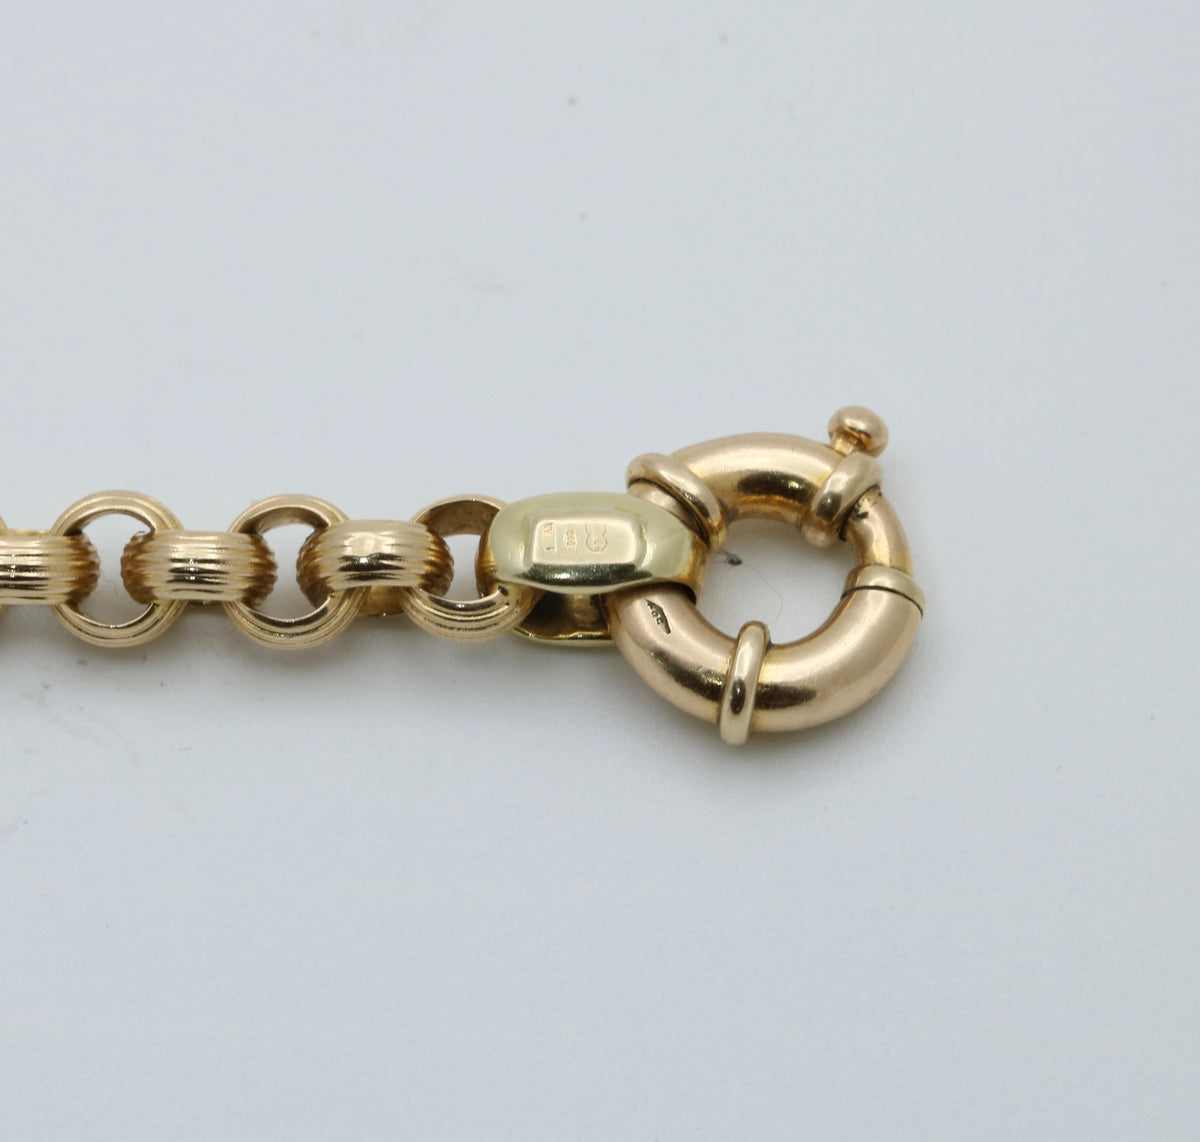 Vintage 14K Gold Textured Belcher Rolo Bracelet, 7.5” Long